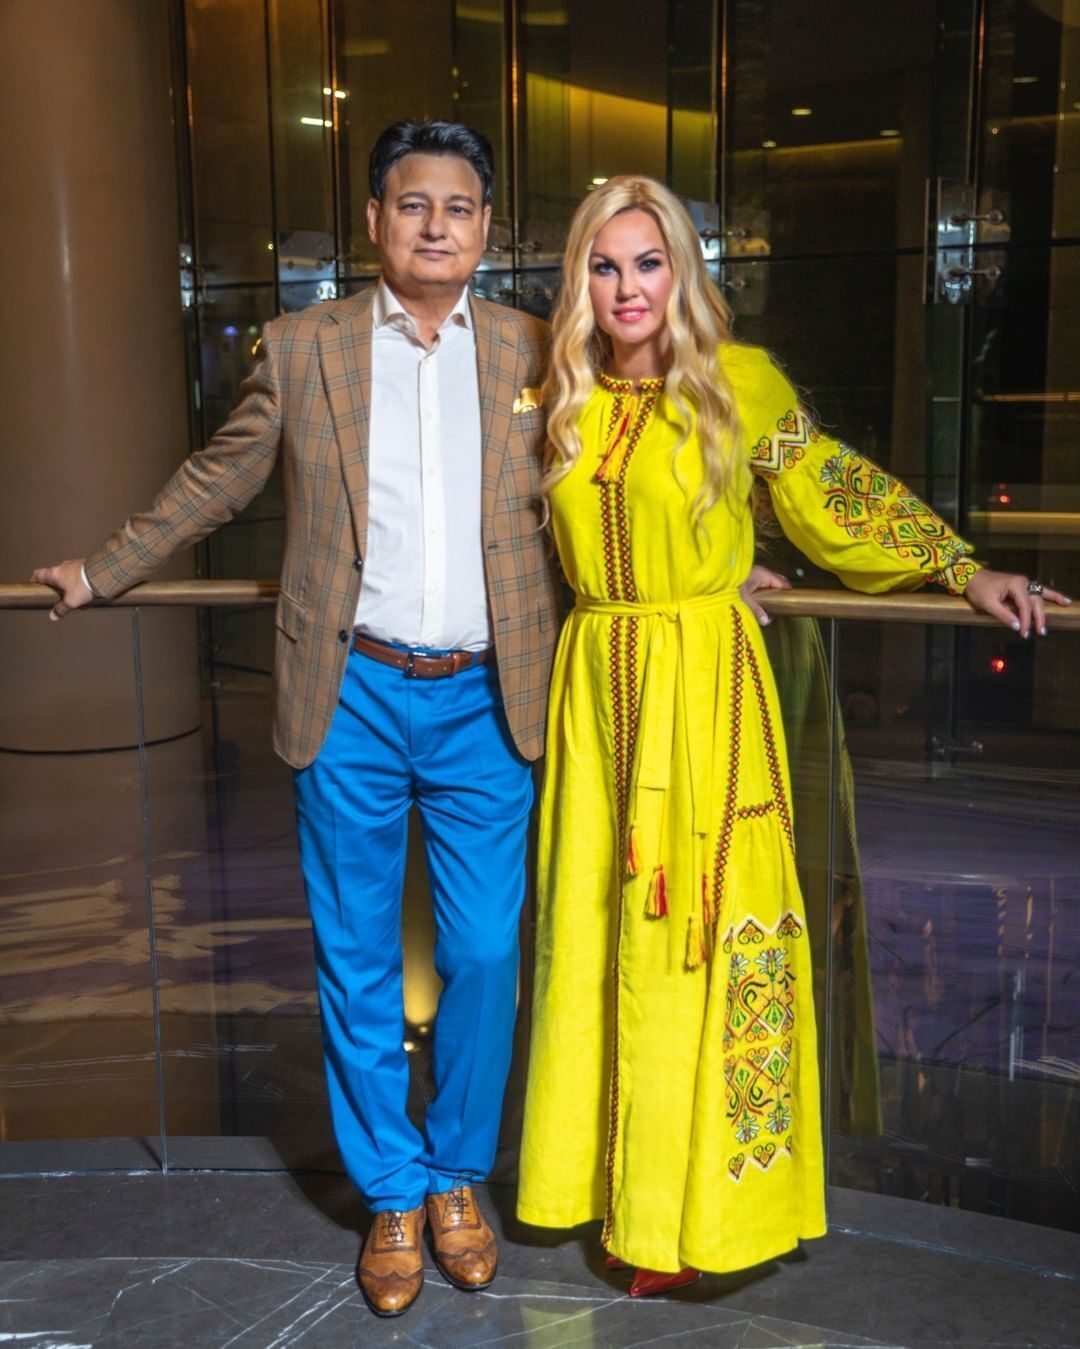 Камалия объявила, что разводится с пакистанским миллиардером после 20 лет брака. Фото